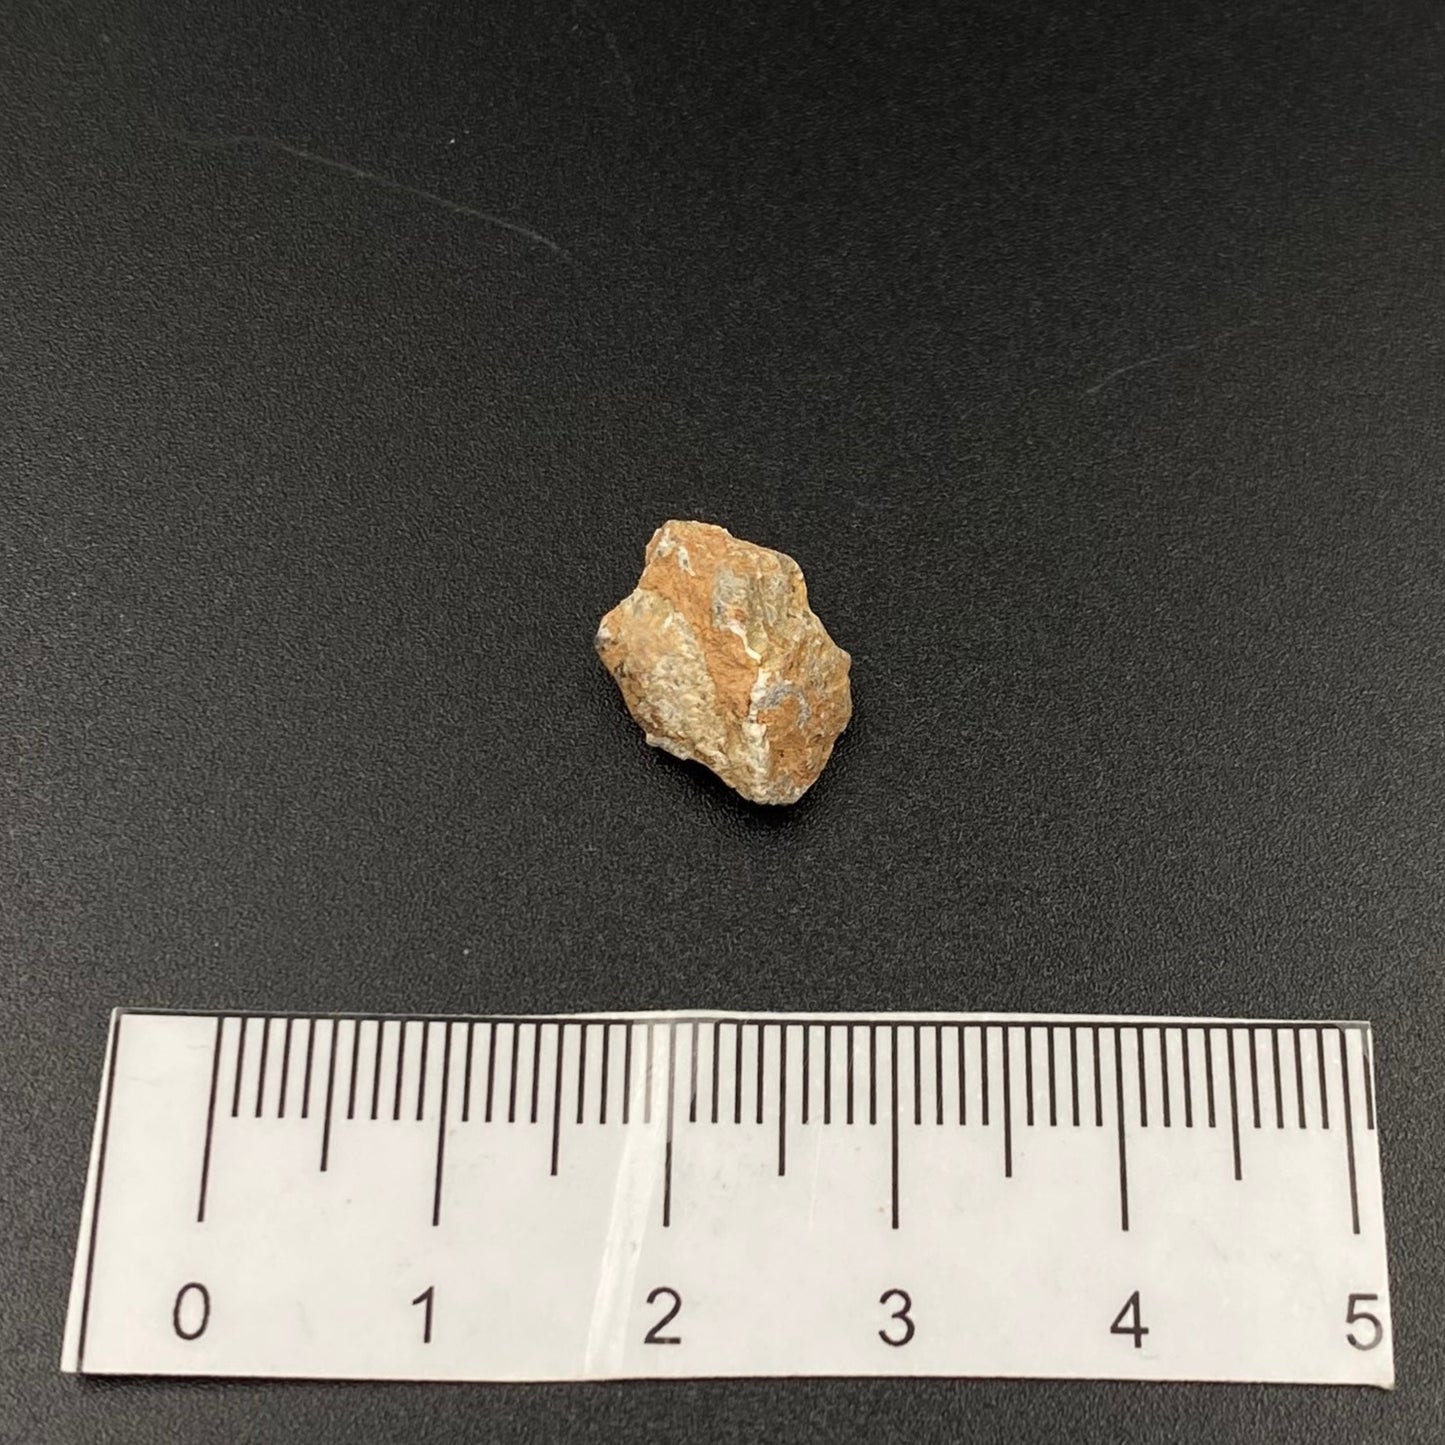 Lunar Meteorite